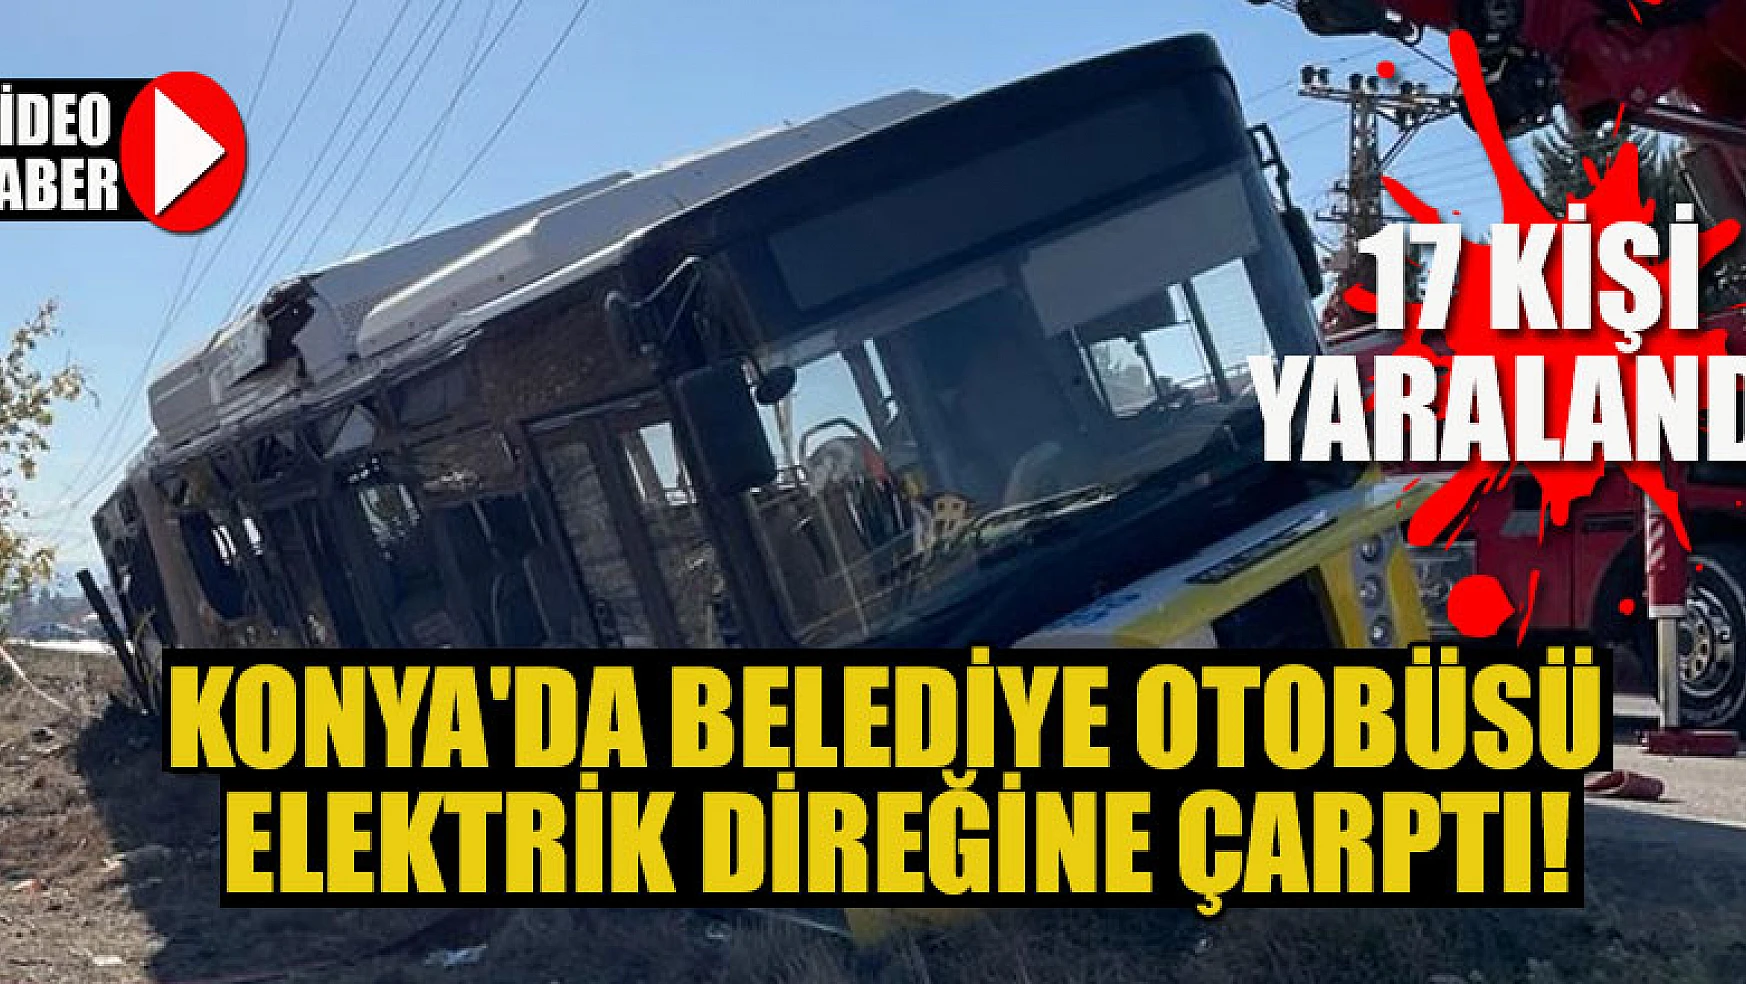 Konya'da belediye otobüsü elektrik direğine çarptı: 17 kişi yaralandı